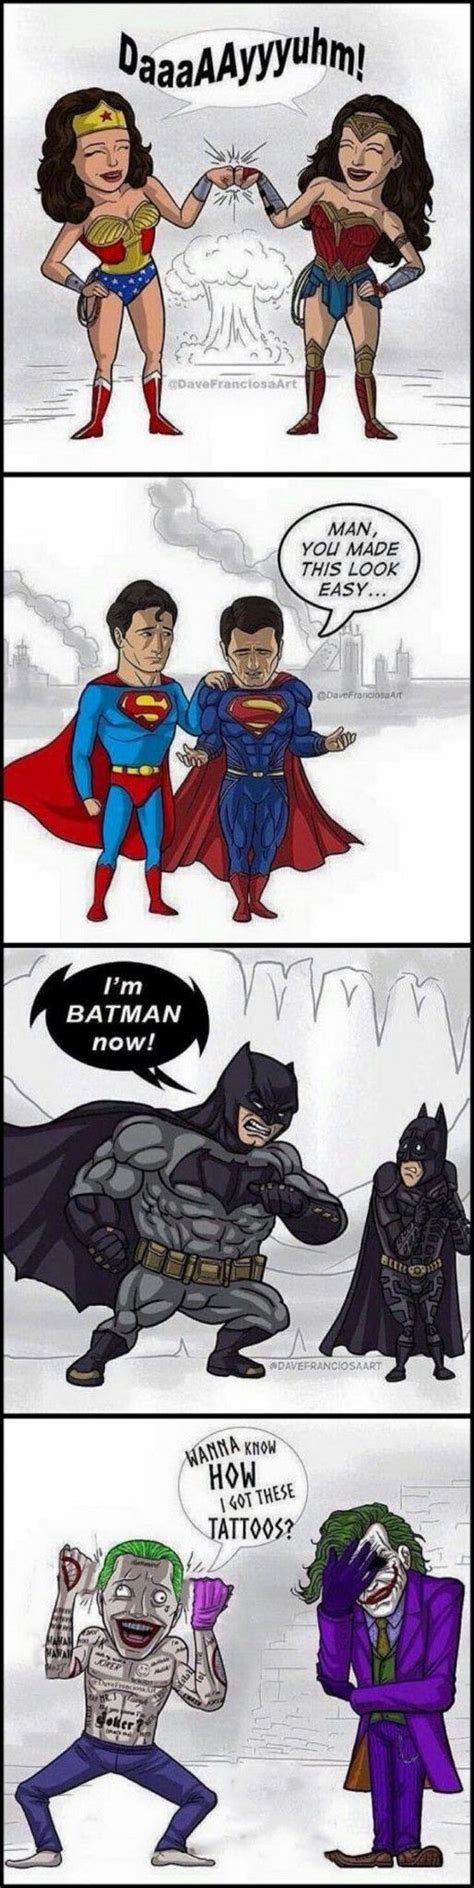 Marvel Dc Comics Bd Comics Marvel N Dc Funny Comics Humor Batman Batman Vs Superman Funny